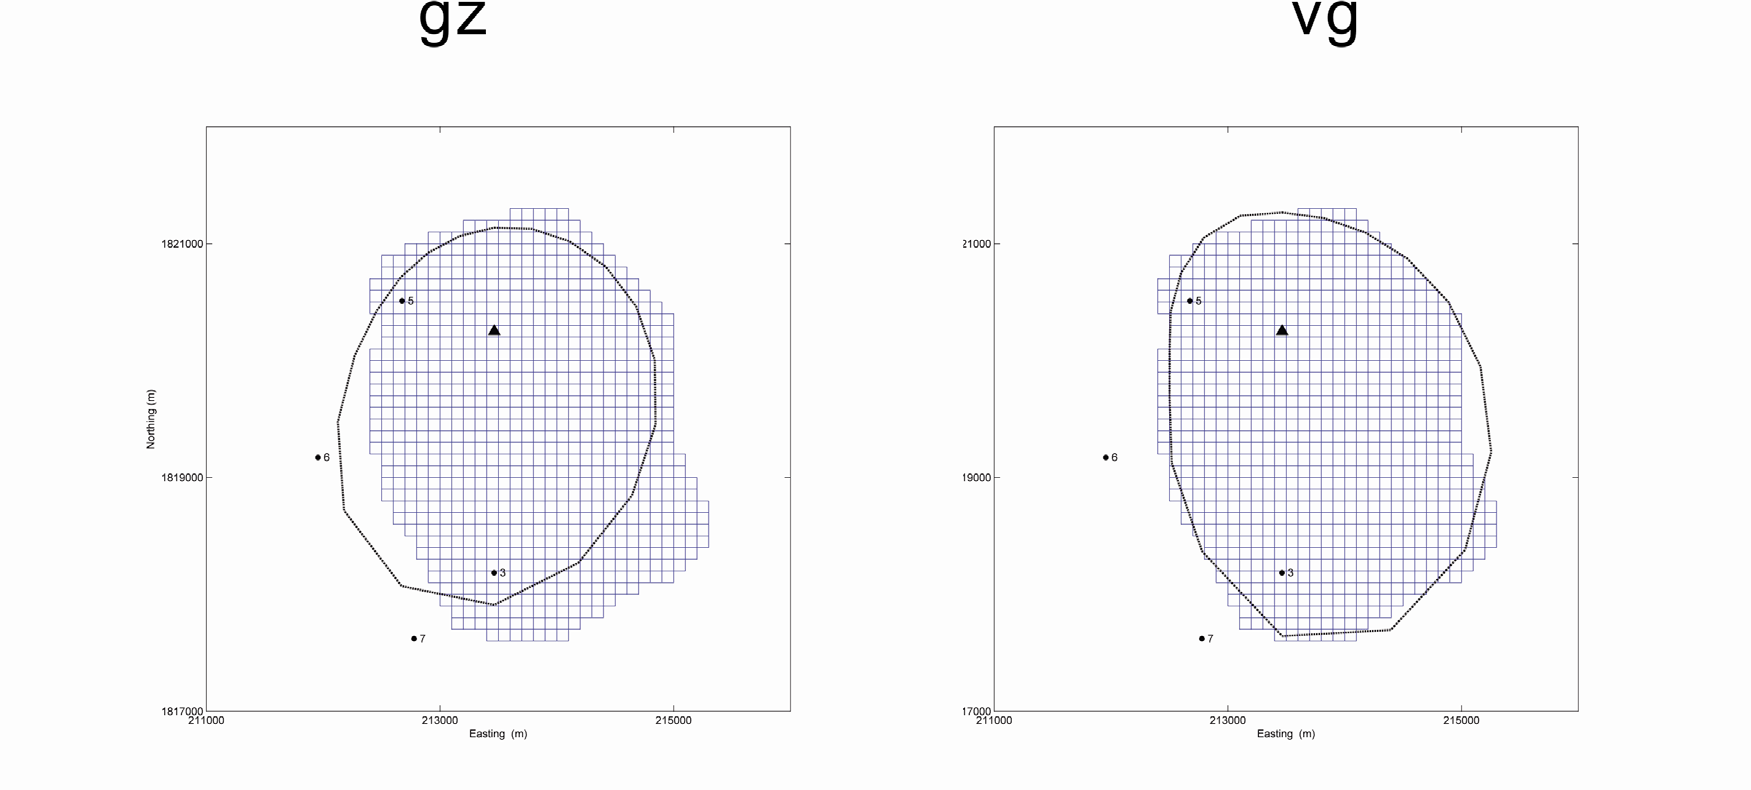 그림 3.1.12. 다수의 시추공에서 수직 중력과 벡터 중력의 비교: 시추공의 분포가 치우친 경우